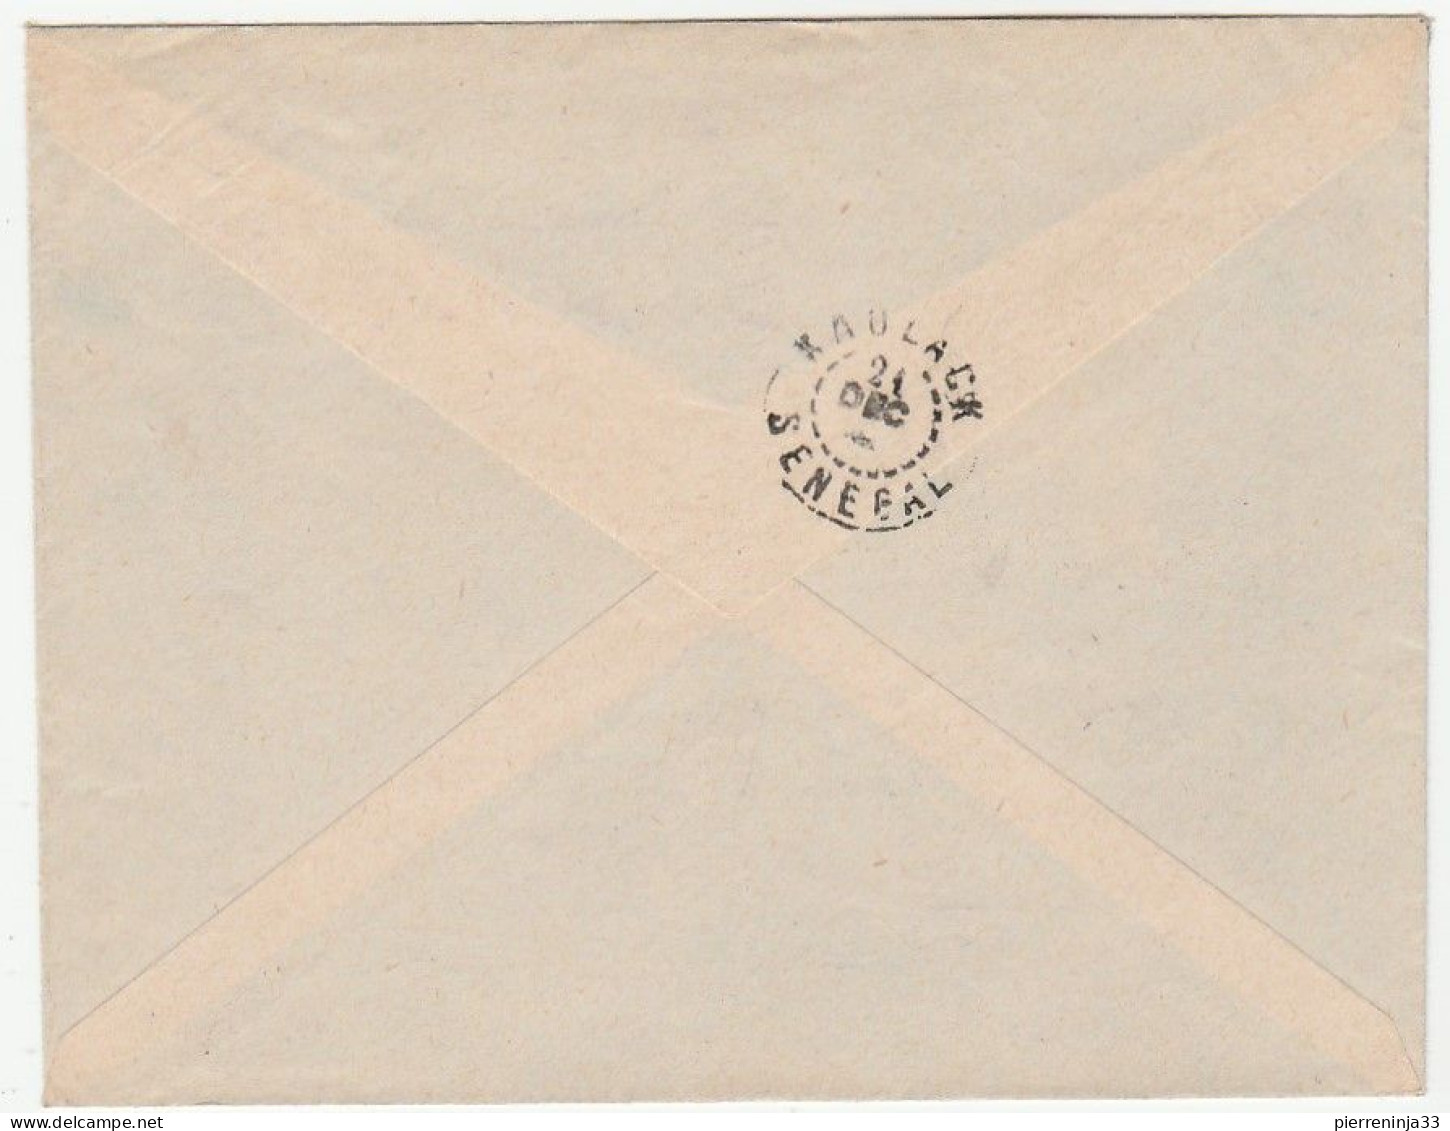 Lettre Avec Cachet Illustrée Croix De Lorraine 2ème Division Blindée, Journées Leclerc, Alger, 1948 - Covers & Documents